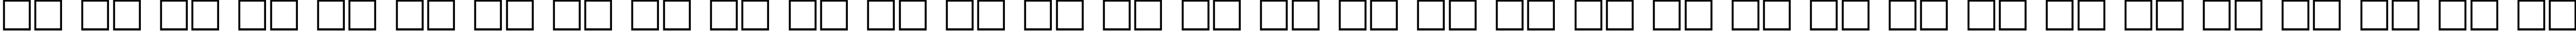 Пример написания русского алфавита шрифтом PragmaticaCTT Bold110b